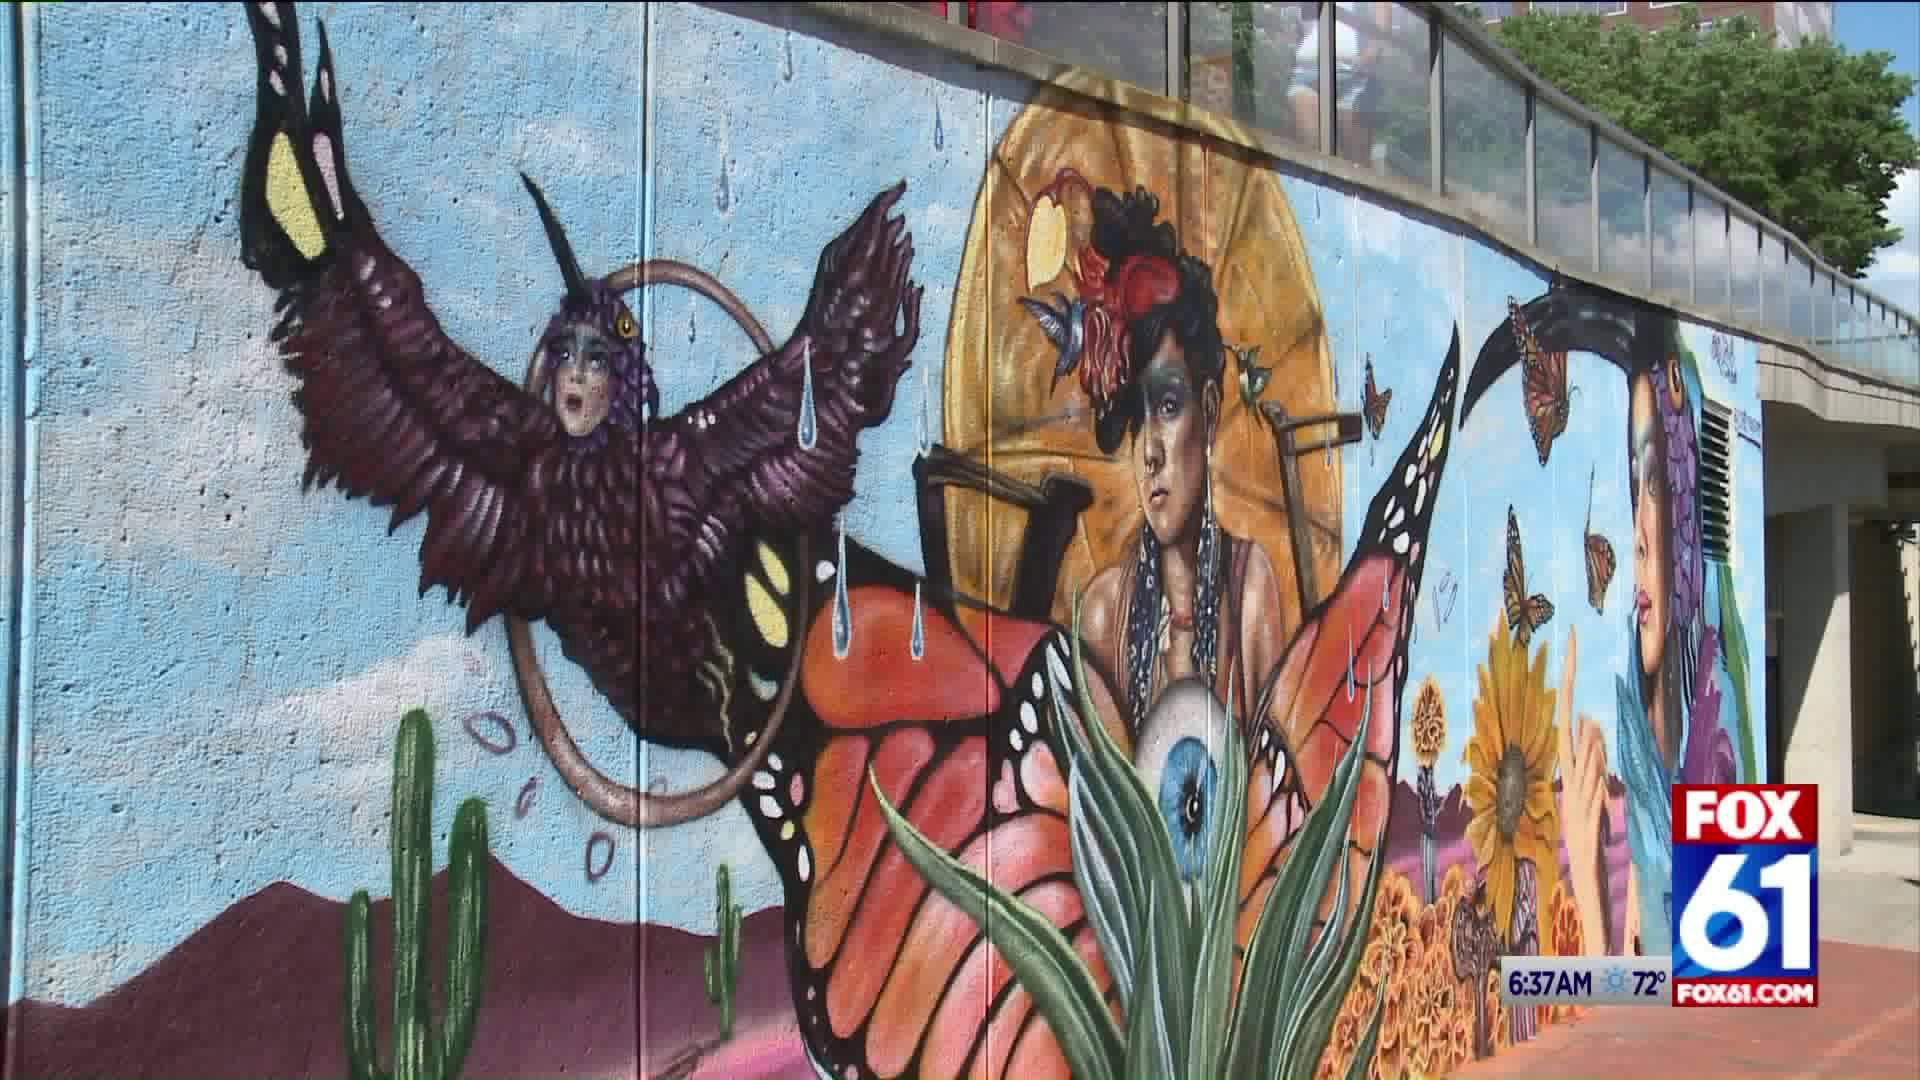 Local artist unveils Cirque Du Soleil inspired mural in downtown Hartford